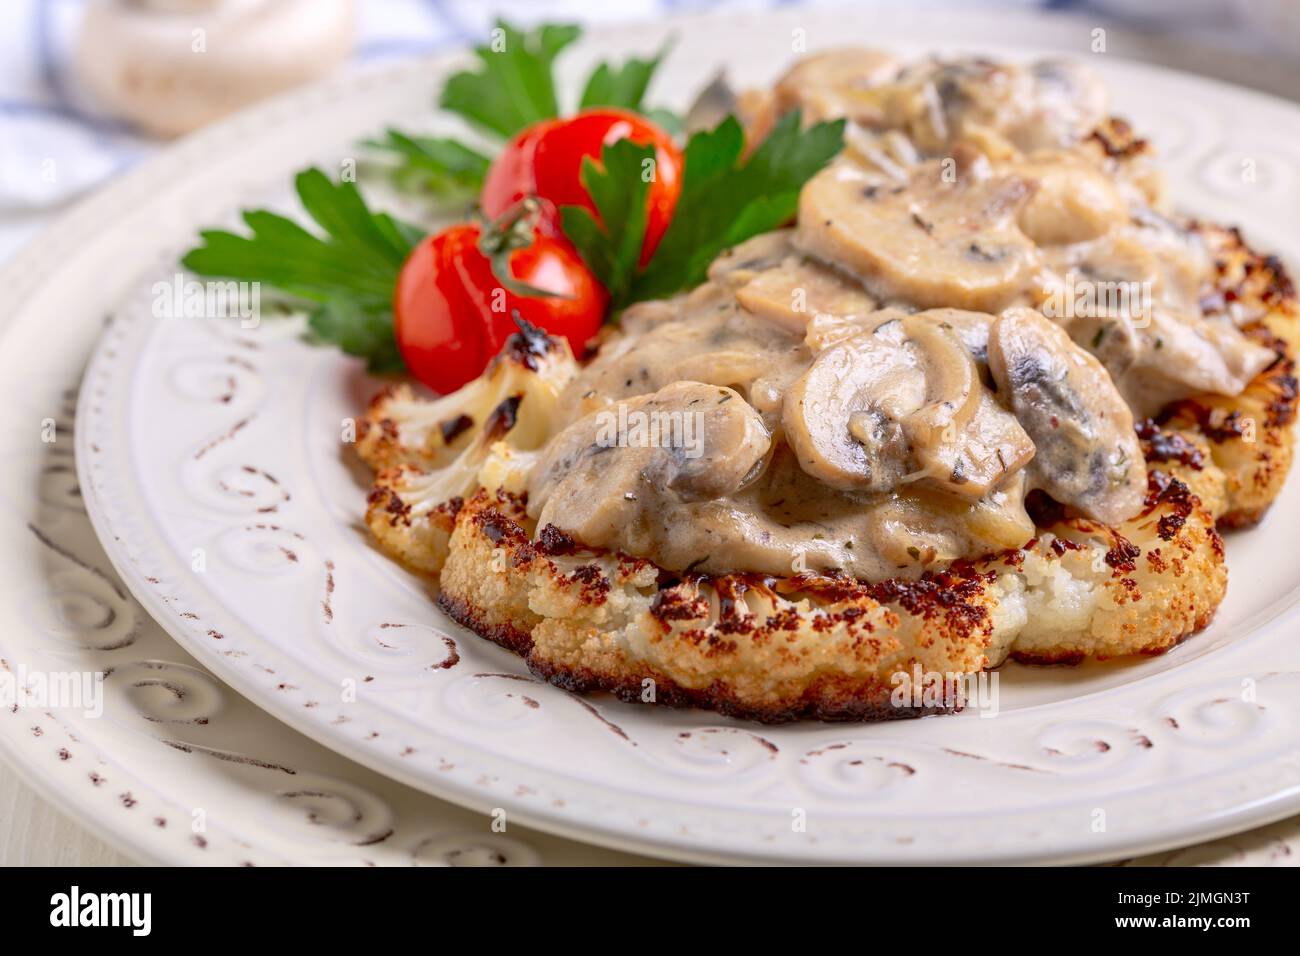 Cauliflower steak with mushrooms. Vegetarian cuisine. Stock Photo